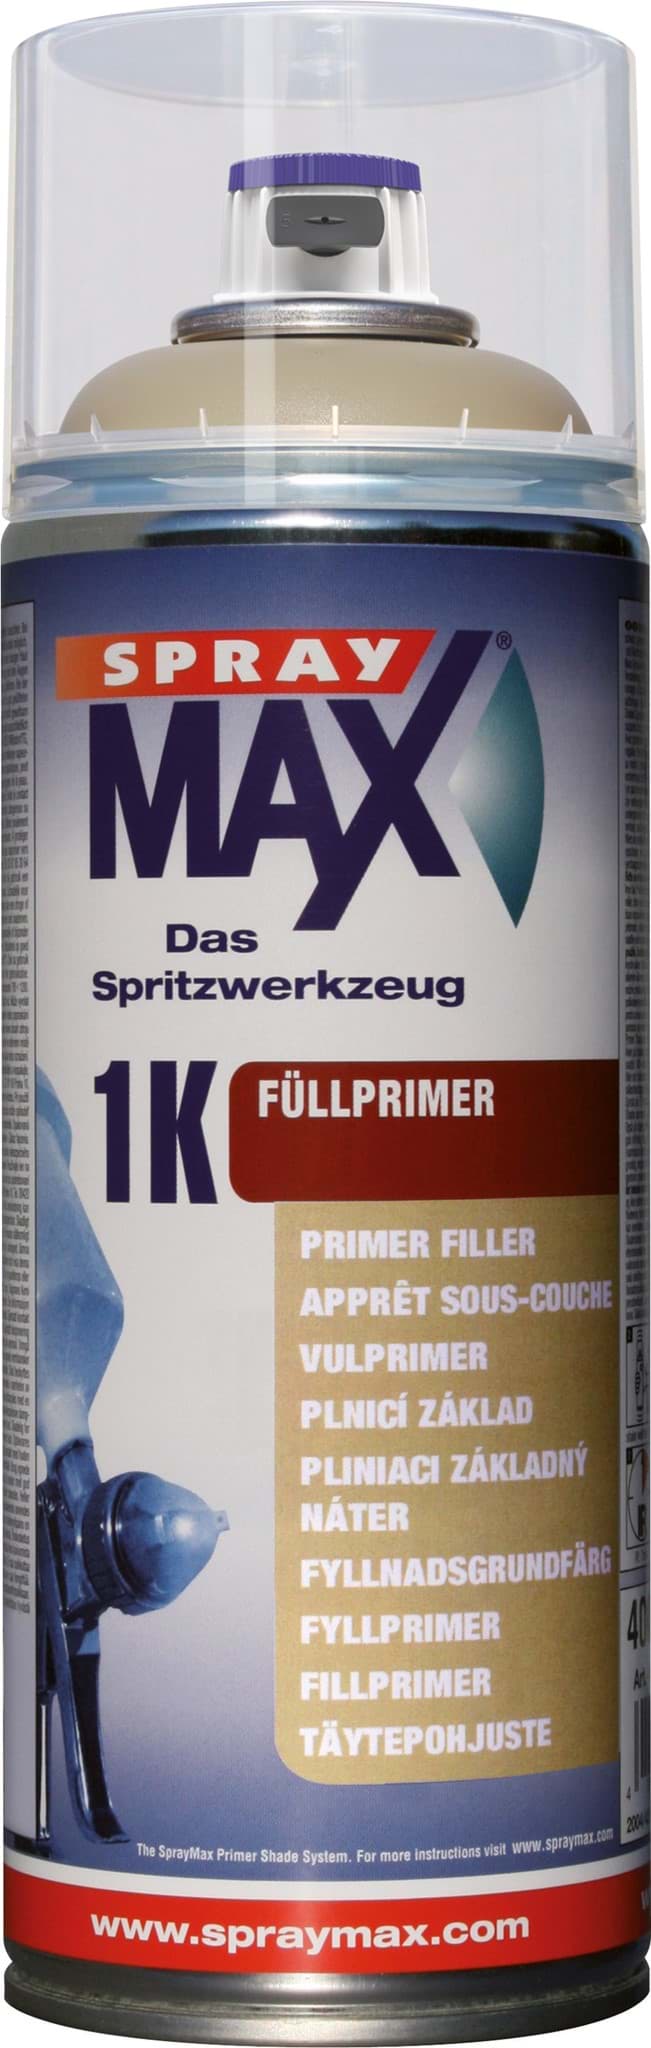 SprayMax 1K Füllprimer beige - Primer Shade Spray 400ml resmi